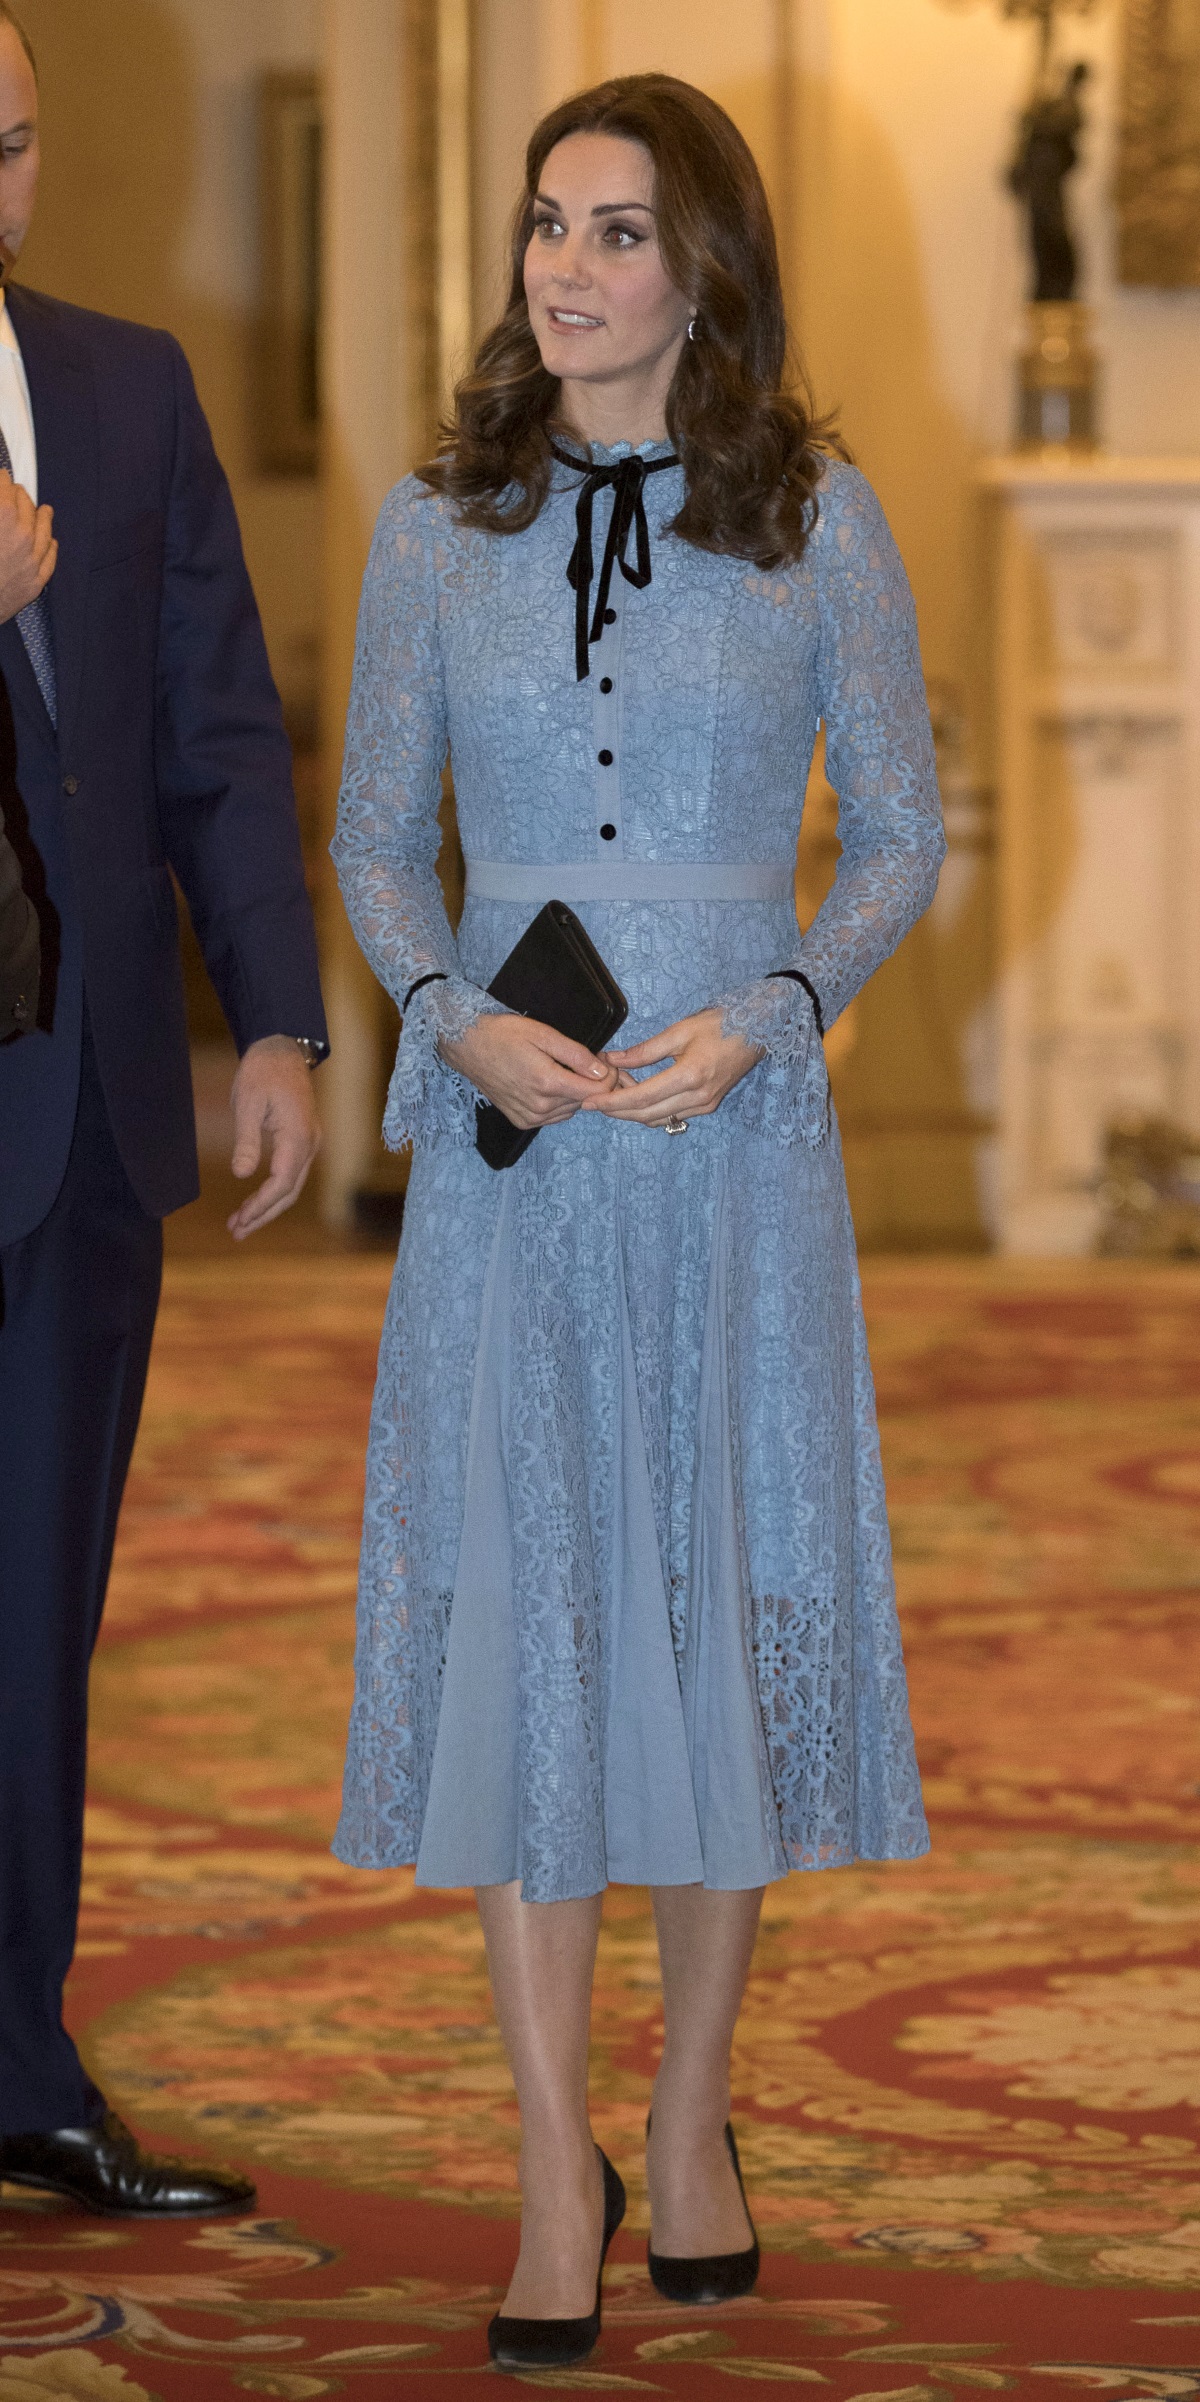 Оранжевото или не допада на херцогинята, или тя просто още не си се представя в дрехи с този цвят, отбелязва изданието Harpers Bazaar.